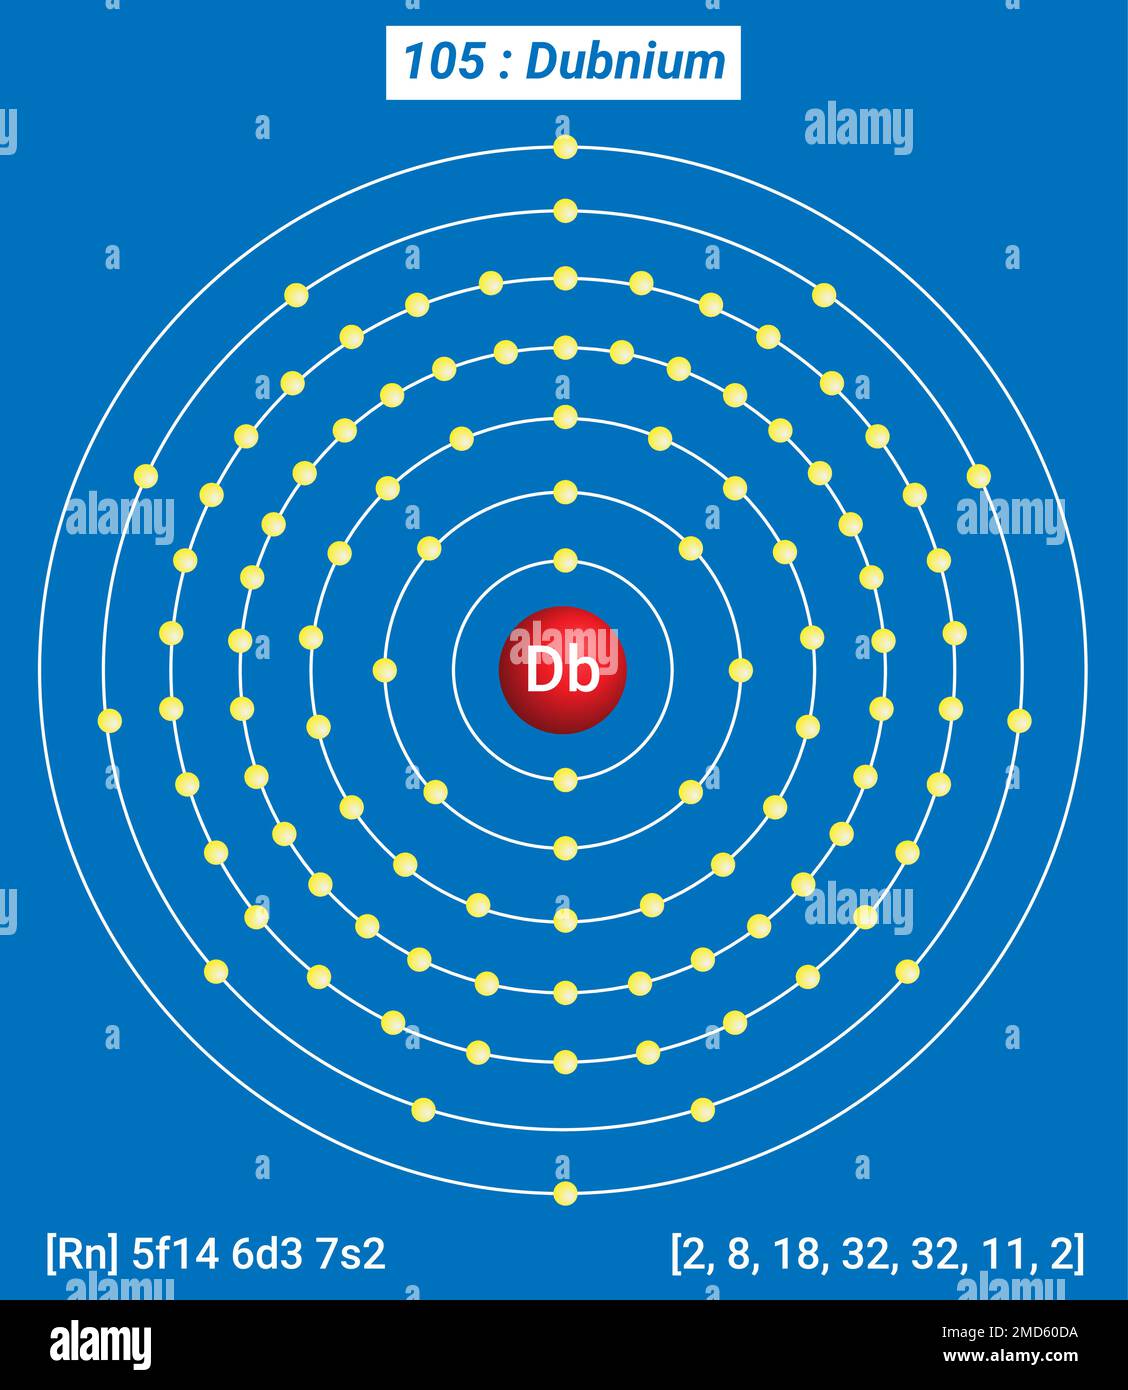 DB Dubnium Element Information - fatti, Proprietà, tendenze, usi e comparazioni Tavola periodica degli elementi, struttura Shell del Dubnium - elettroni Illustrazione Vettoriale